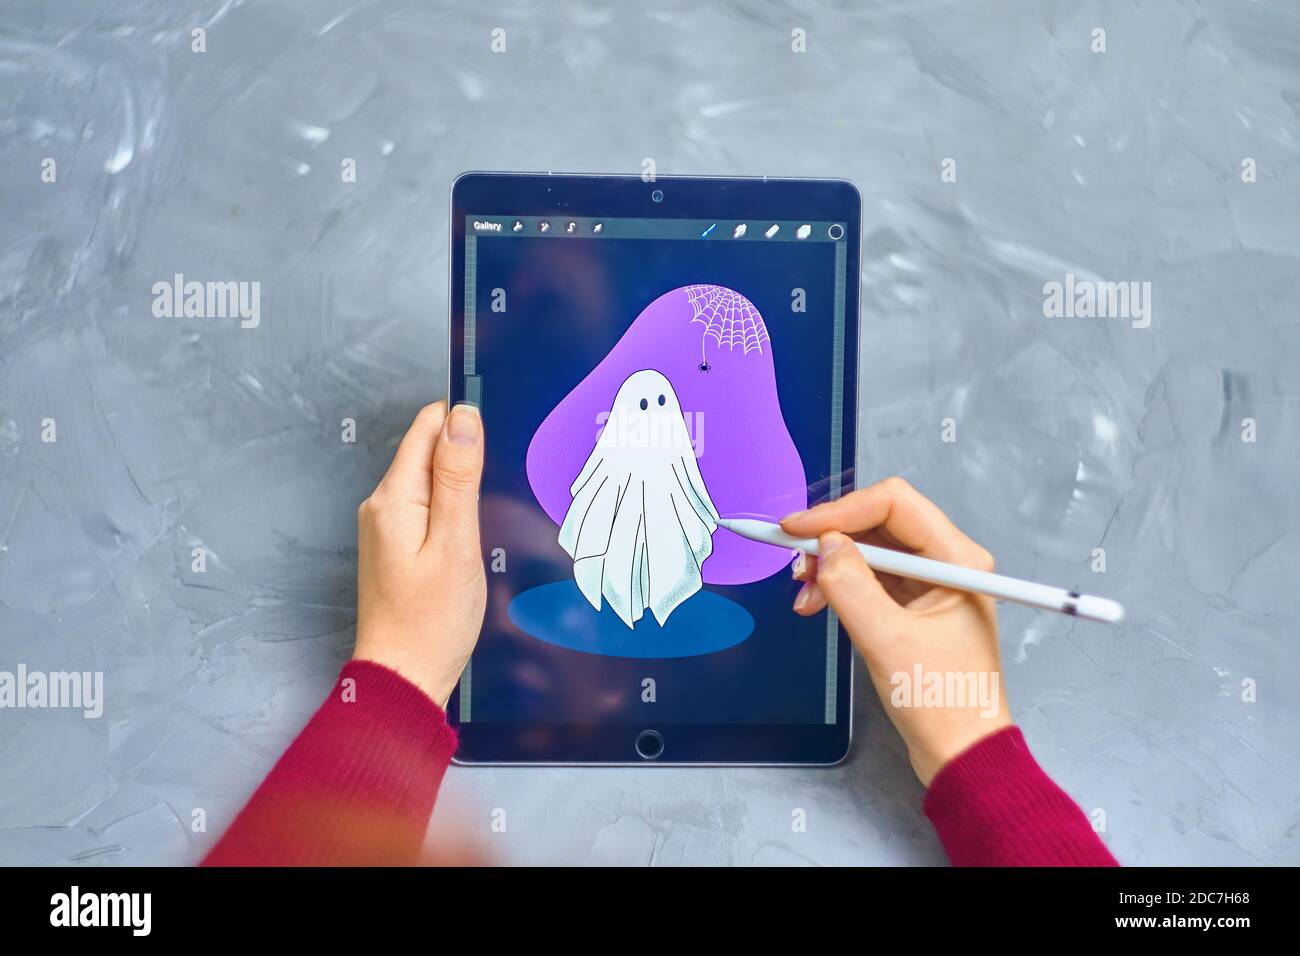 Woman Illustrator disegna Ghost su iPad Pro in un programma di procreate utilizzando una matita di mela. Illustrator digitale. Lavoro freelance come progettista. Bishkek, Kirghizistan - 21 gennaio 2019. Foto Stock